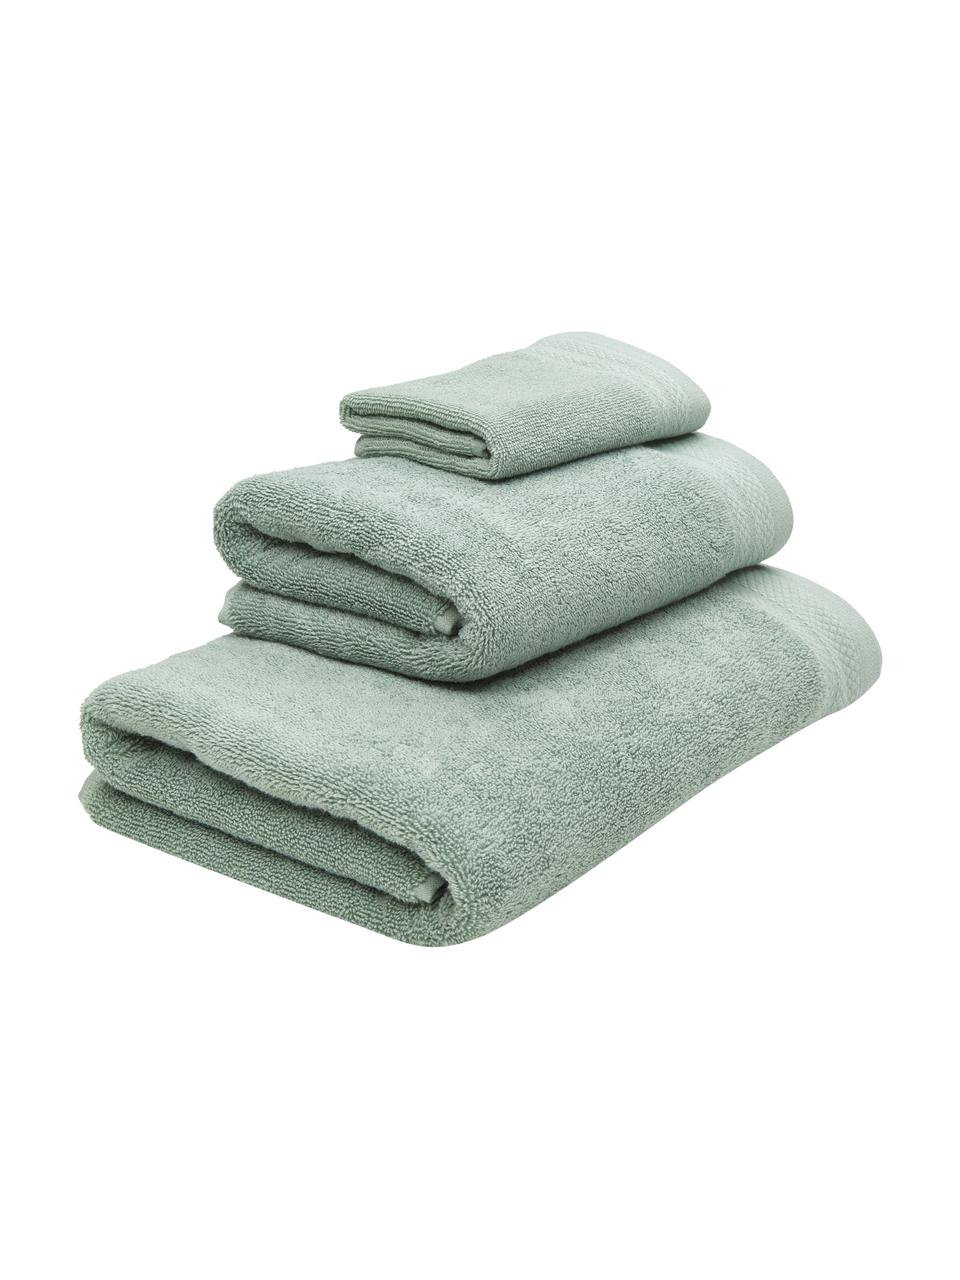 Lot de serviettes de bain en coton bio Premium, 3 élém., 100 % coton bio certifié GOTS (par GCL International, GCL-300517)
Qualité supérieure 600 g/m², Vert sauge, Lot de différentes tailles